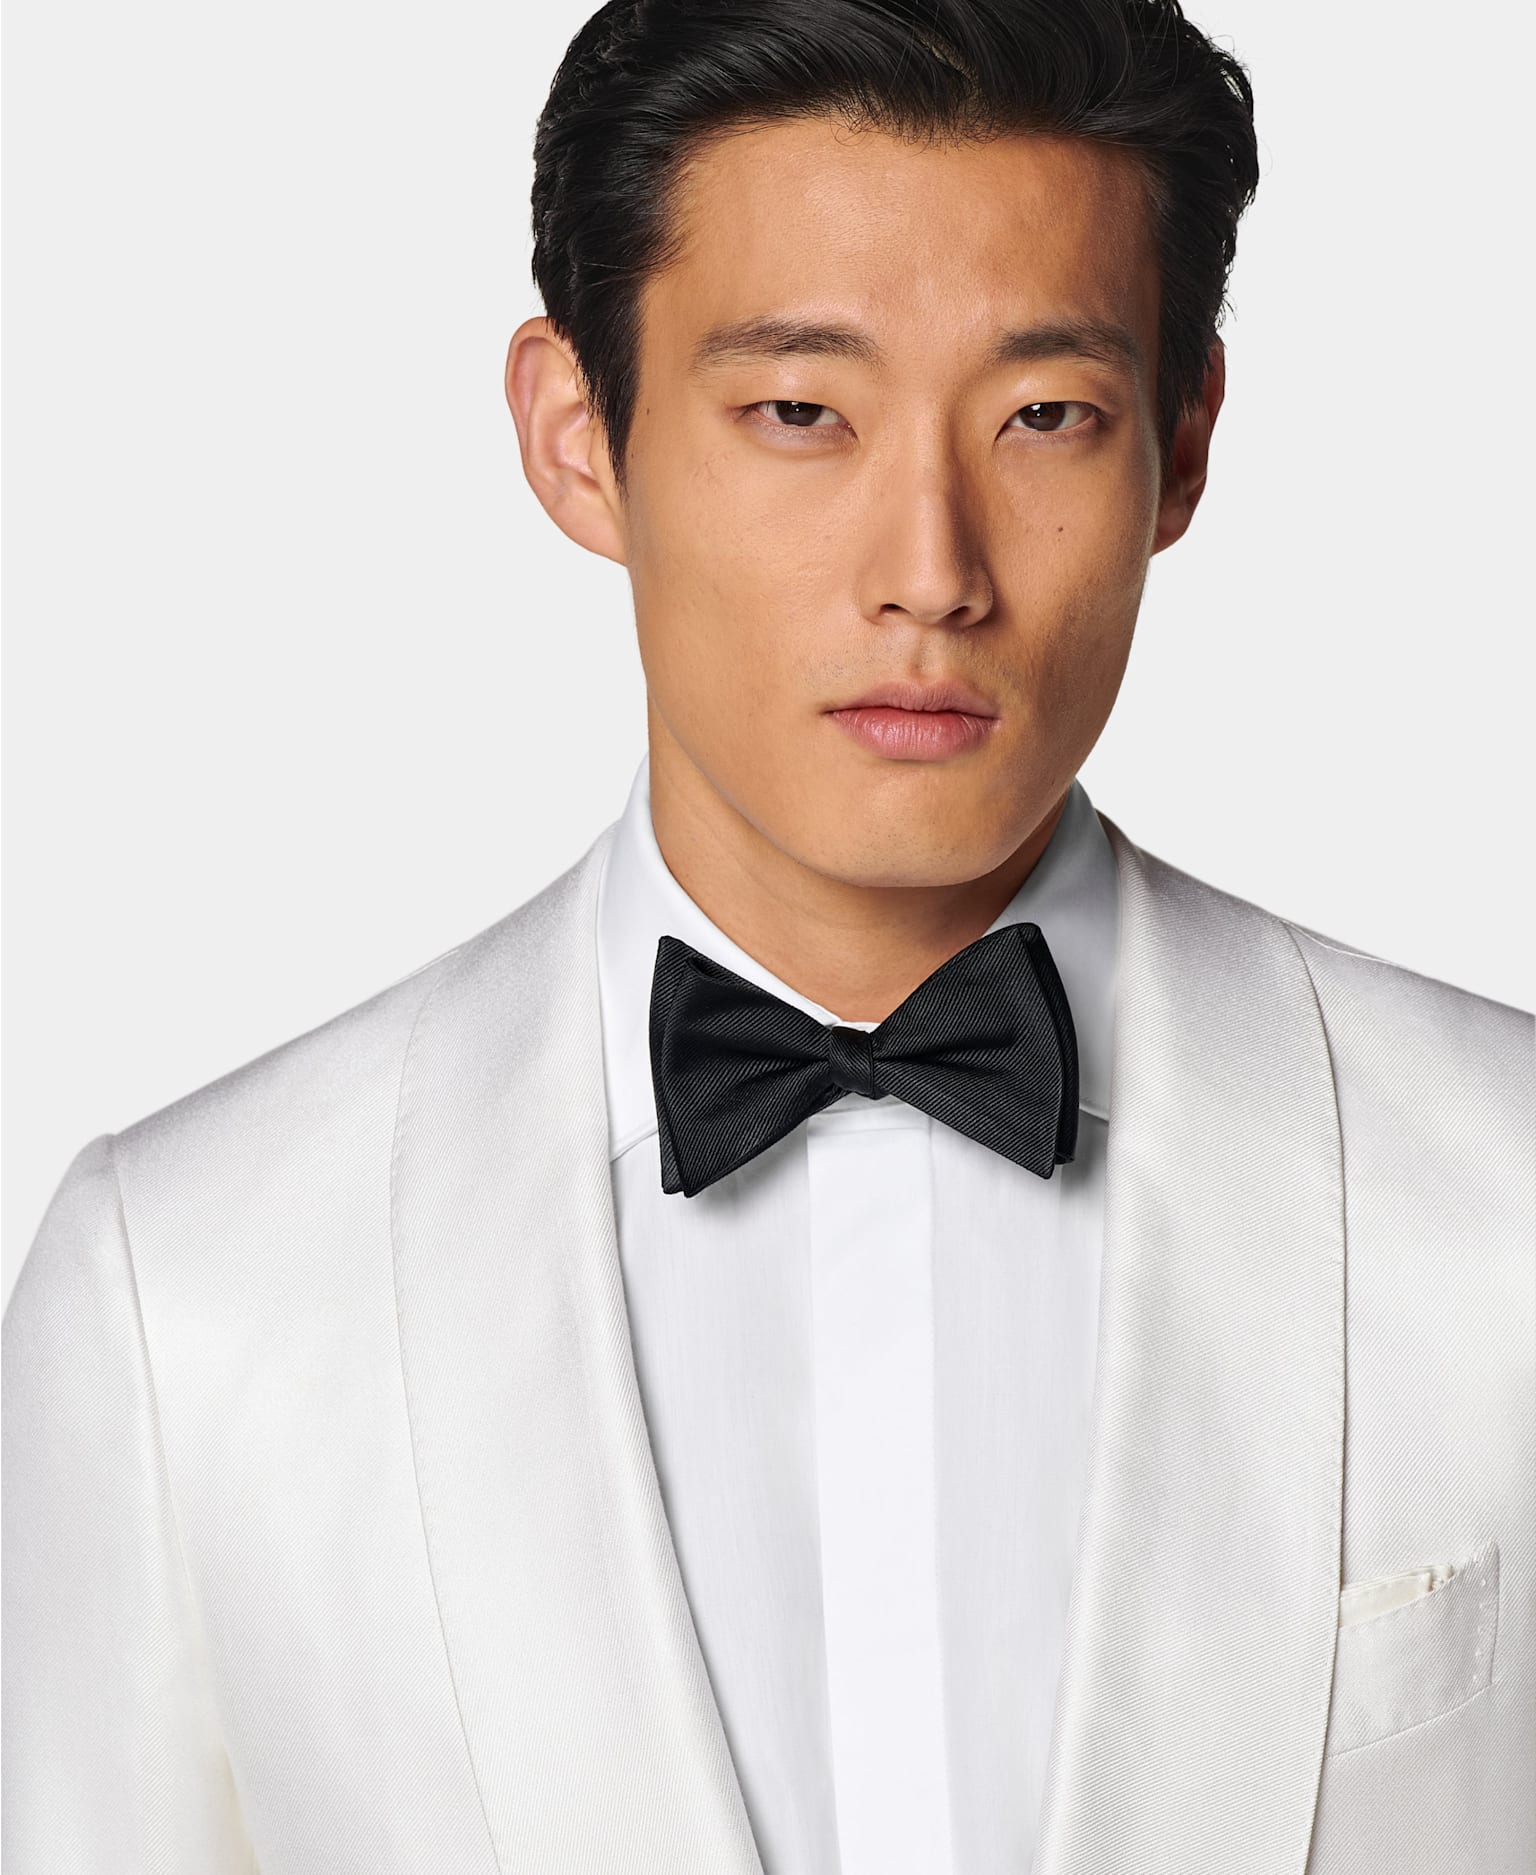 Detalle de un blazer de esmoquin blanco con cuello chal, camisa blanca con tapeta oculta y pajarita negra de seda.